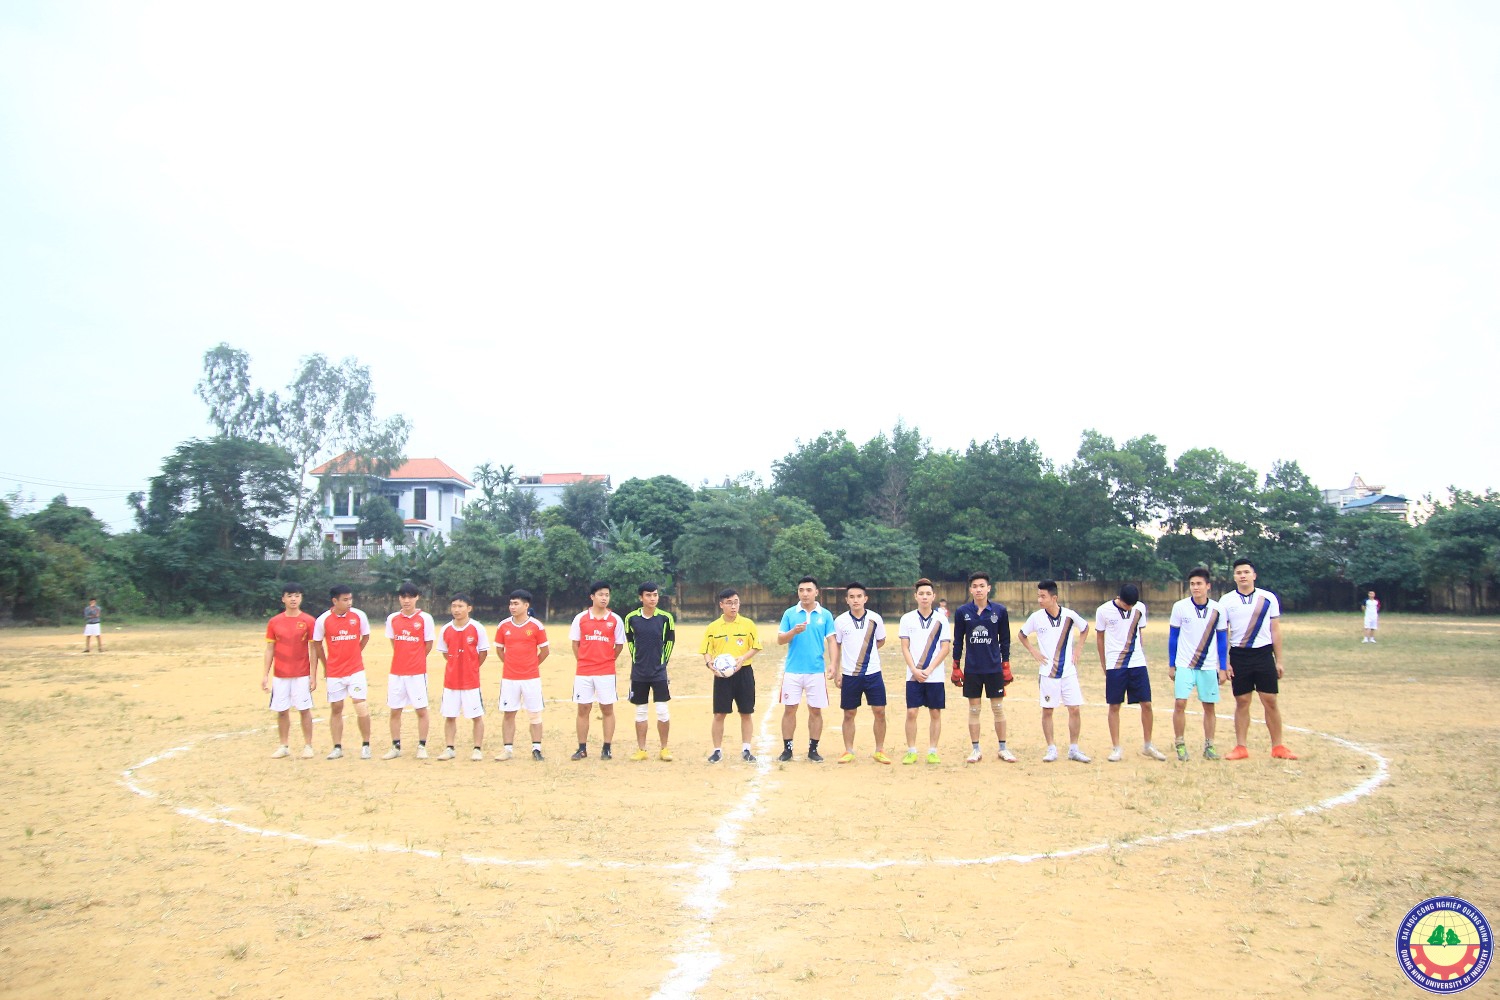 Giải bóng đá các câu lạc bộ hội sinh viên năm 2017